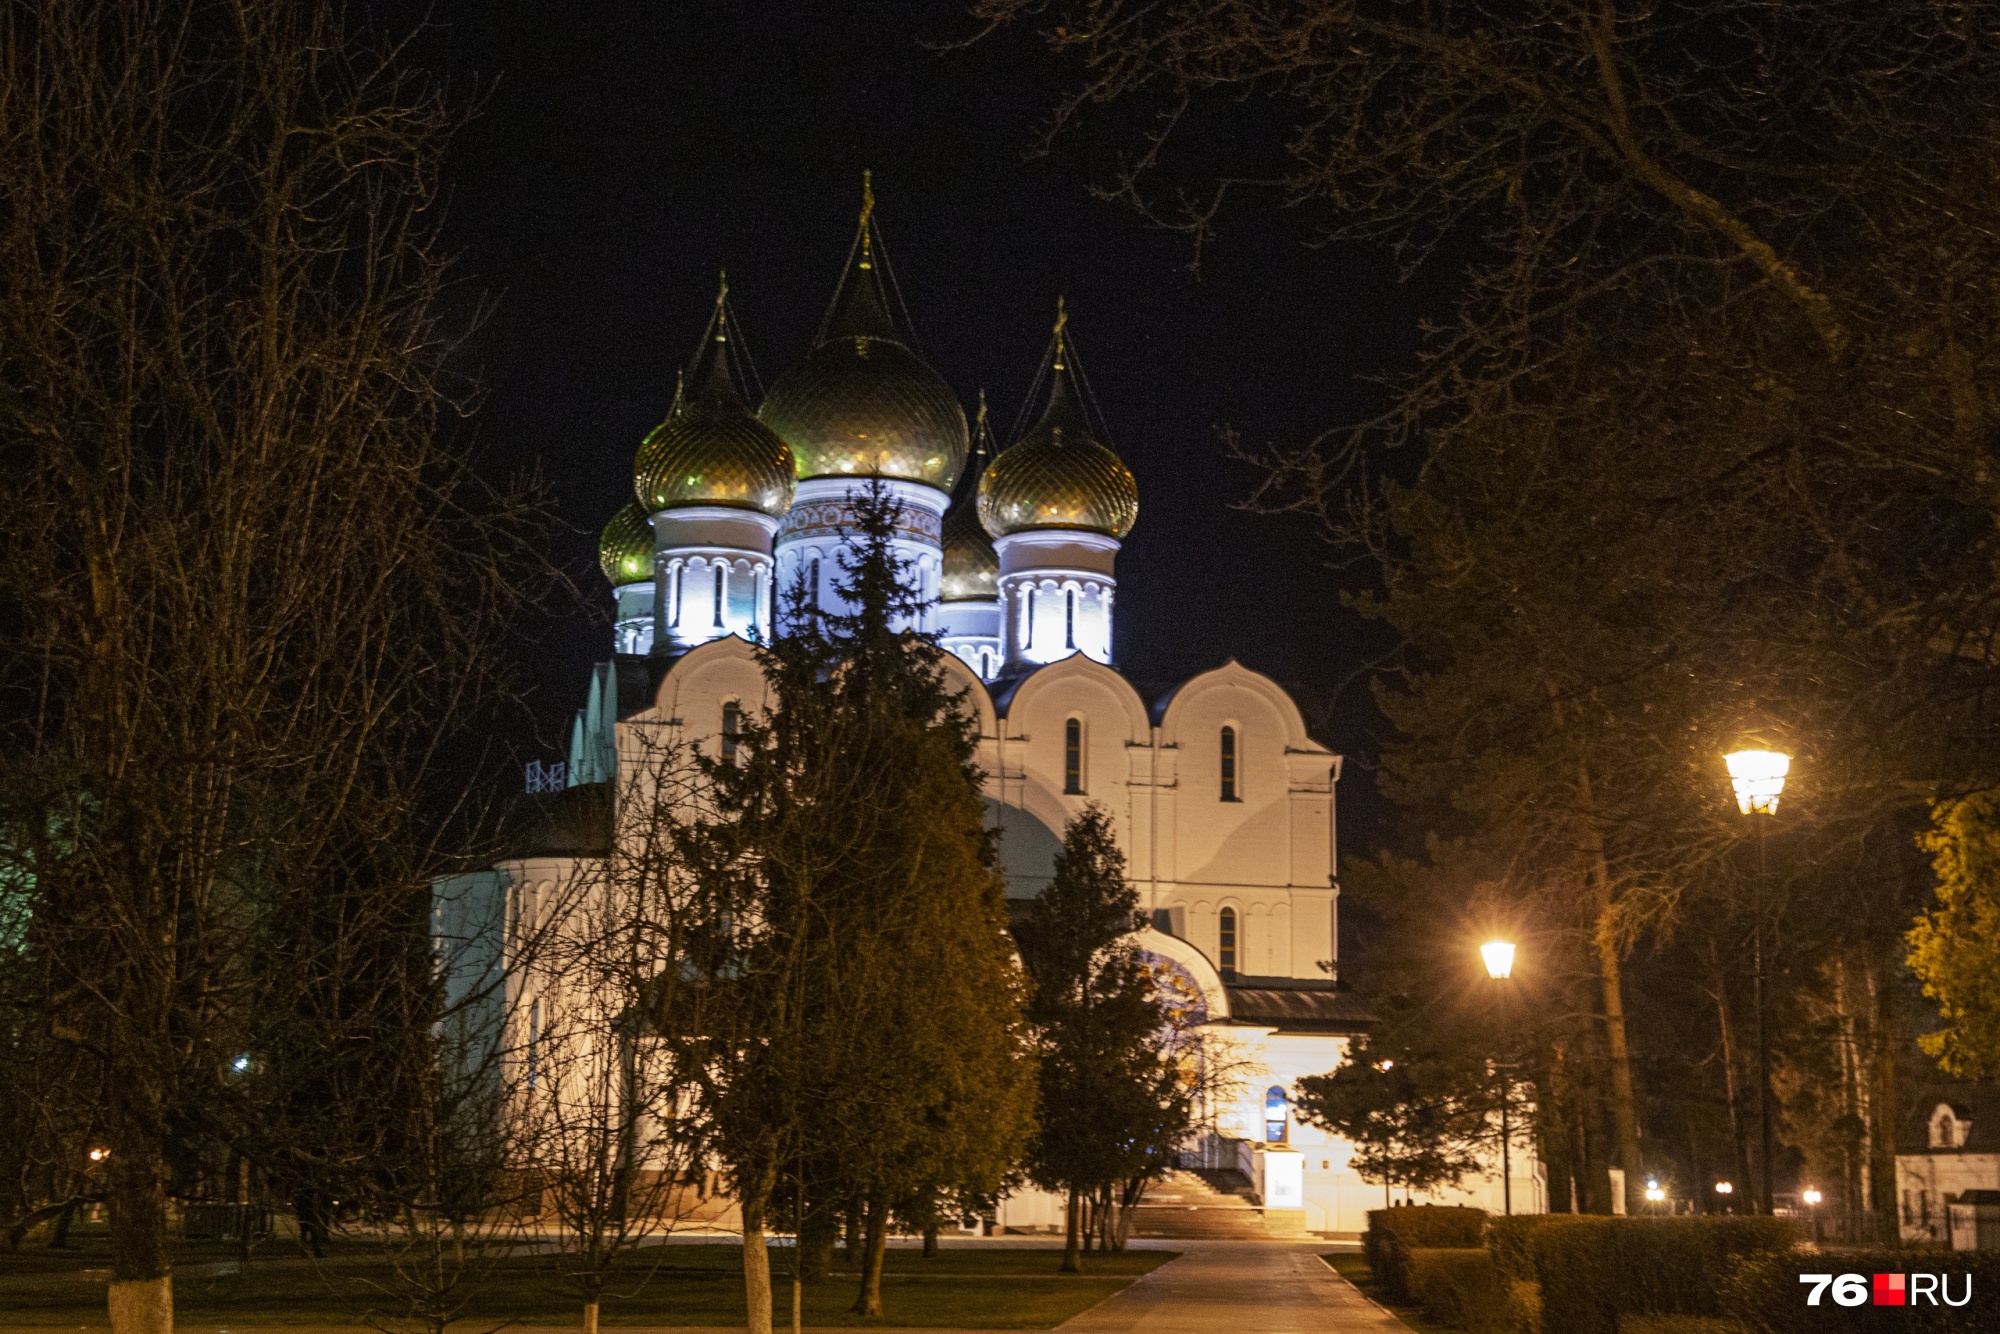 Во многих российских городах церкви стоят чуть ли не на каждом шагу. Лучше на их фоне не устраивать никаких акций и флешмобов